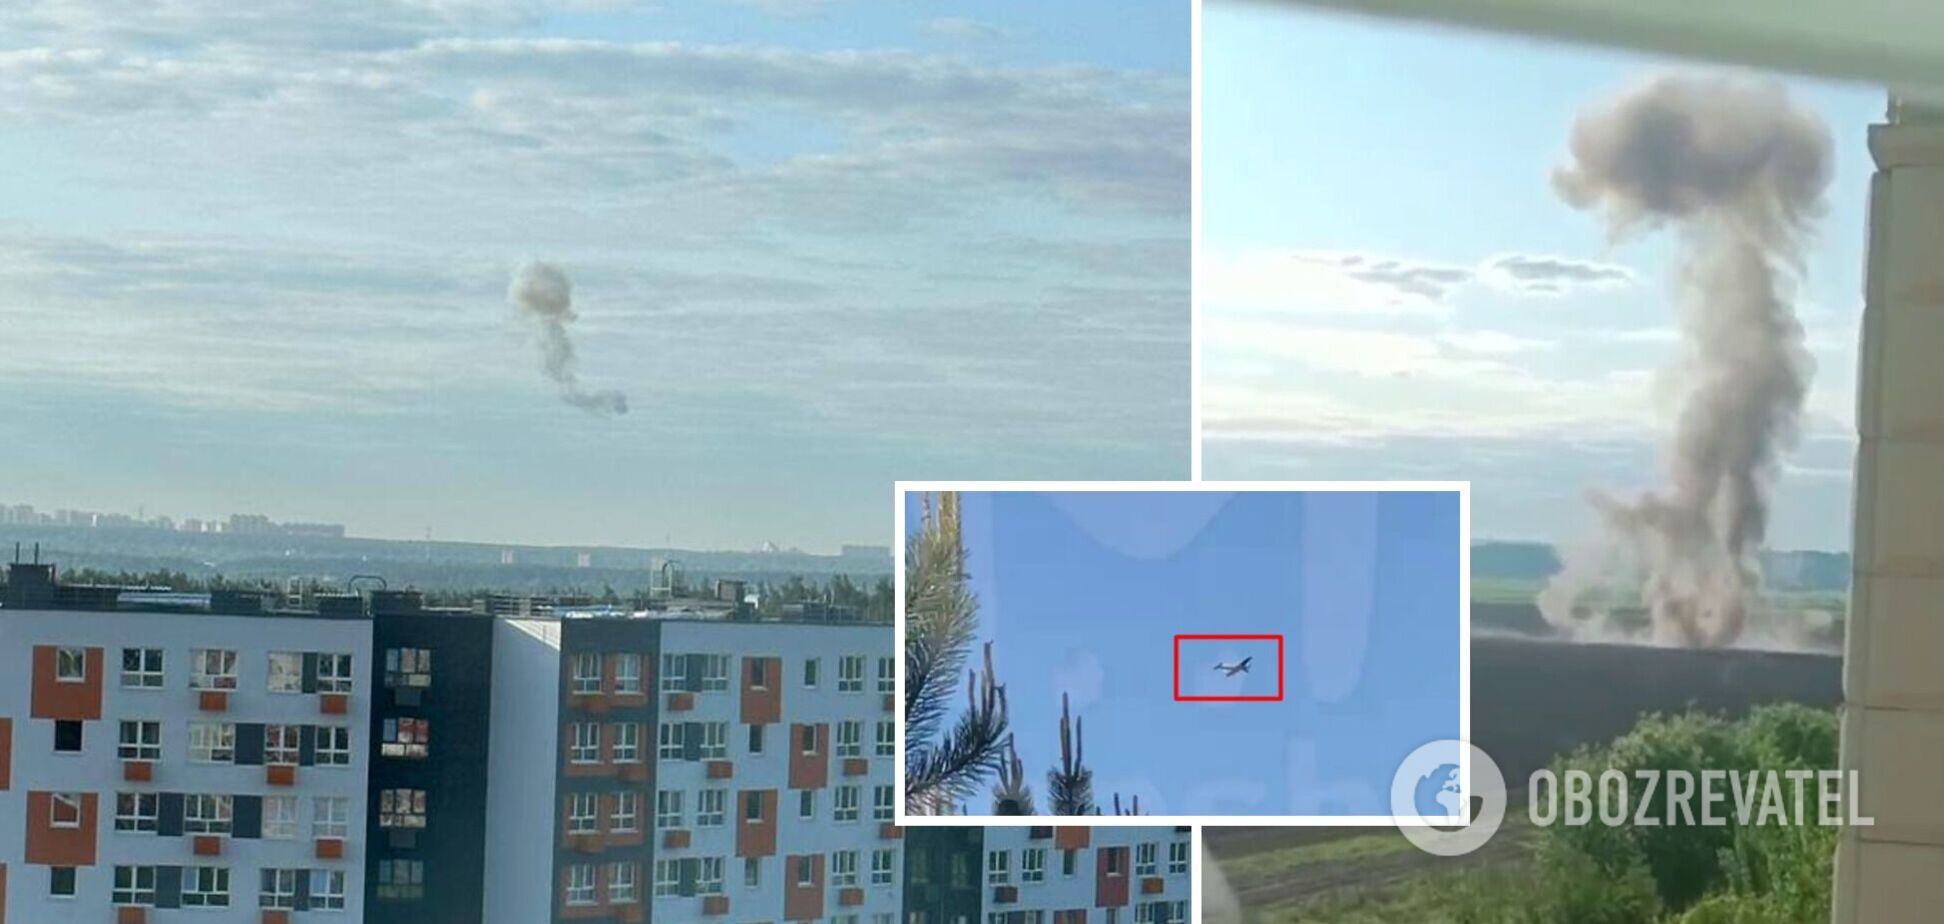 'Взрывное' утро в РФ: Москву впервые массированно атаковали дроны, в Одинцово заявили о работе ПВО. Фото и видео